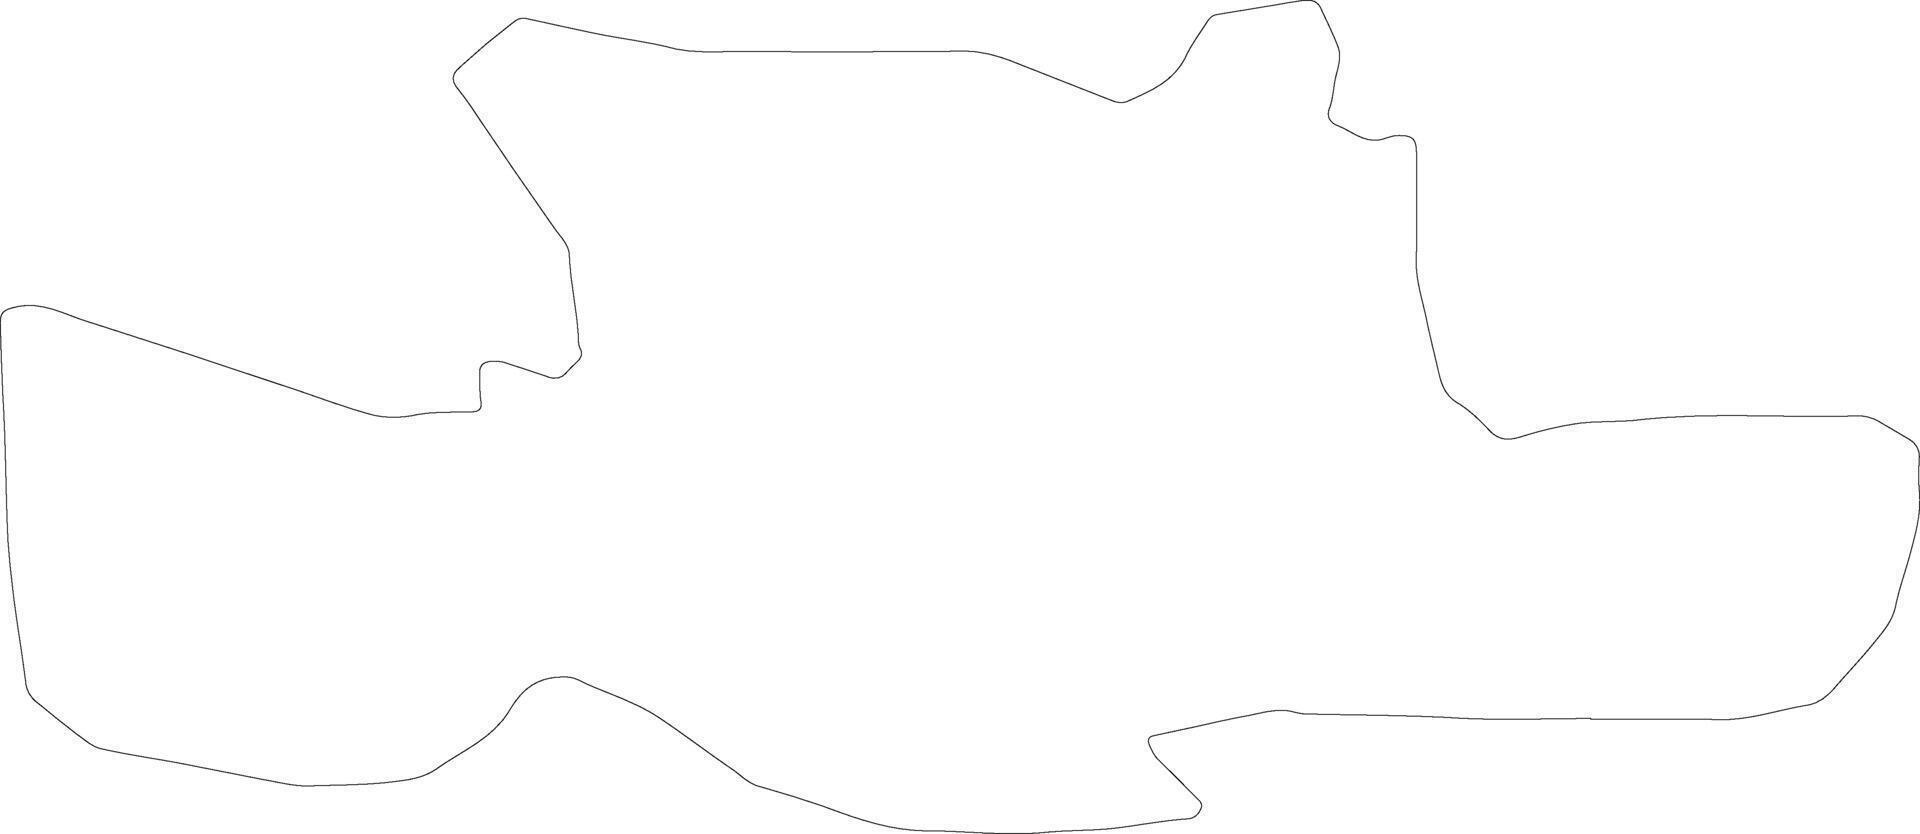 öst dunbartonshire förenad rike översikt Karta vektor